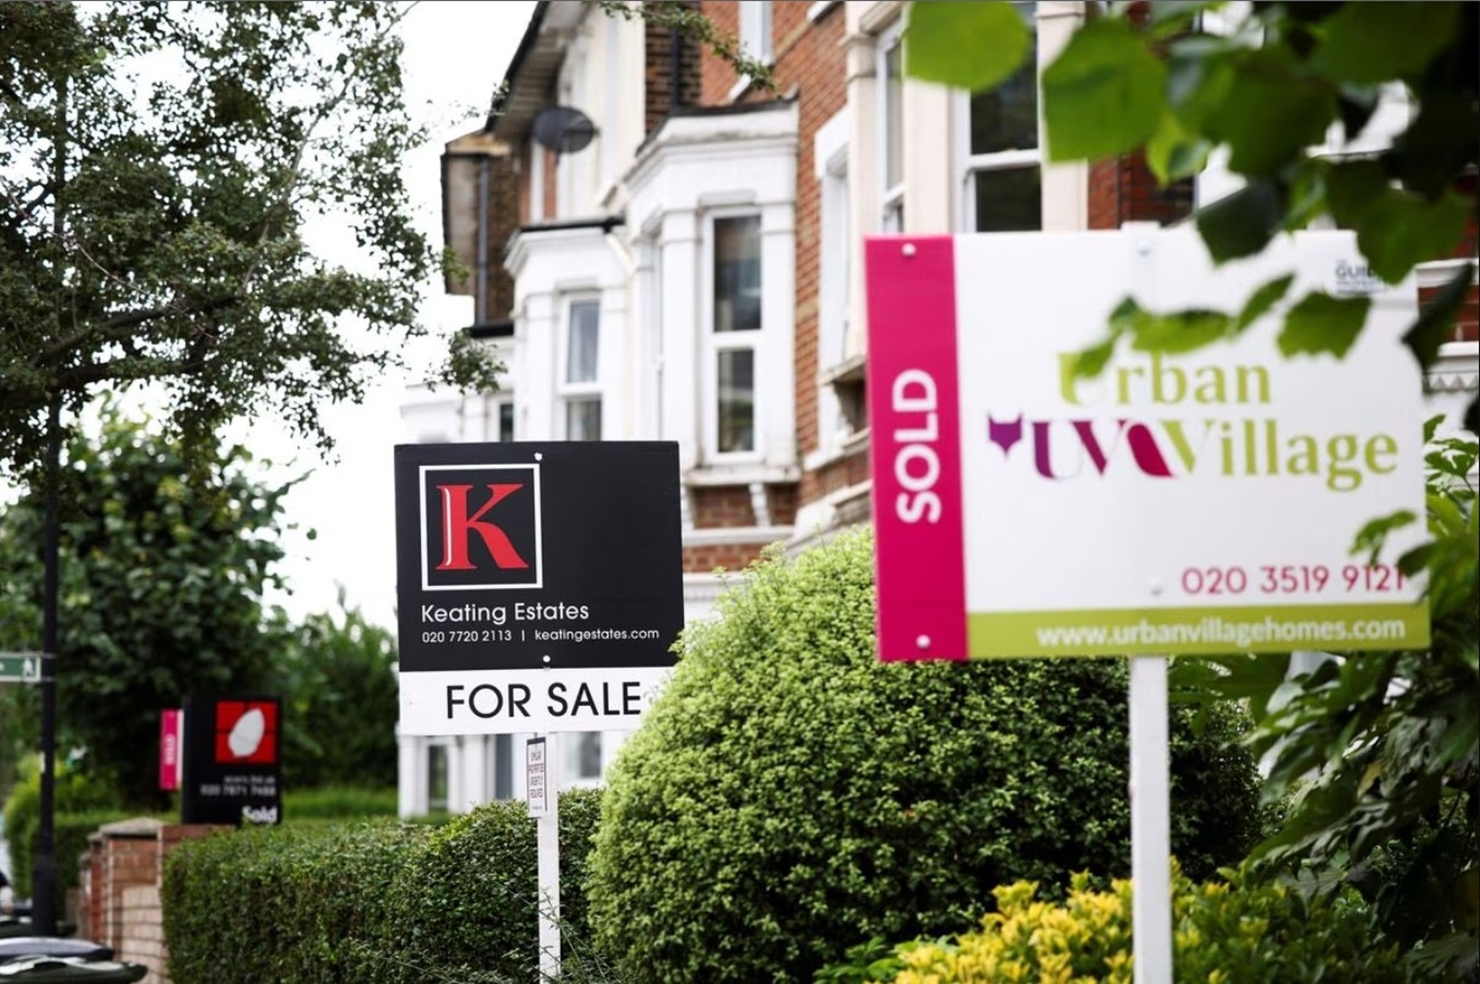 هاليفاكس - ارتفاع أسعار المنازل السنوي في المملكة المتحدة يصل إلى ٪  10.8